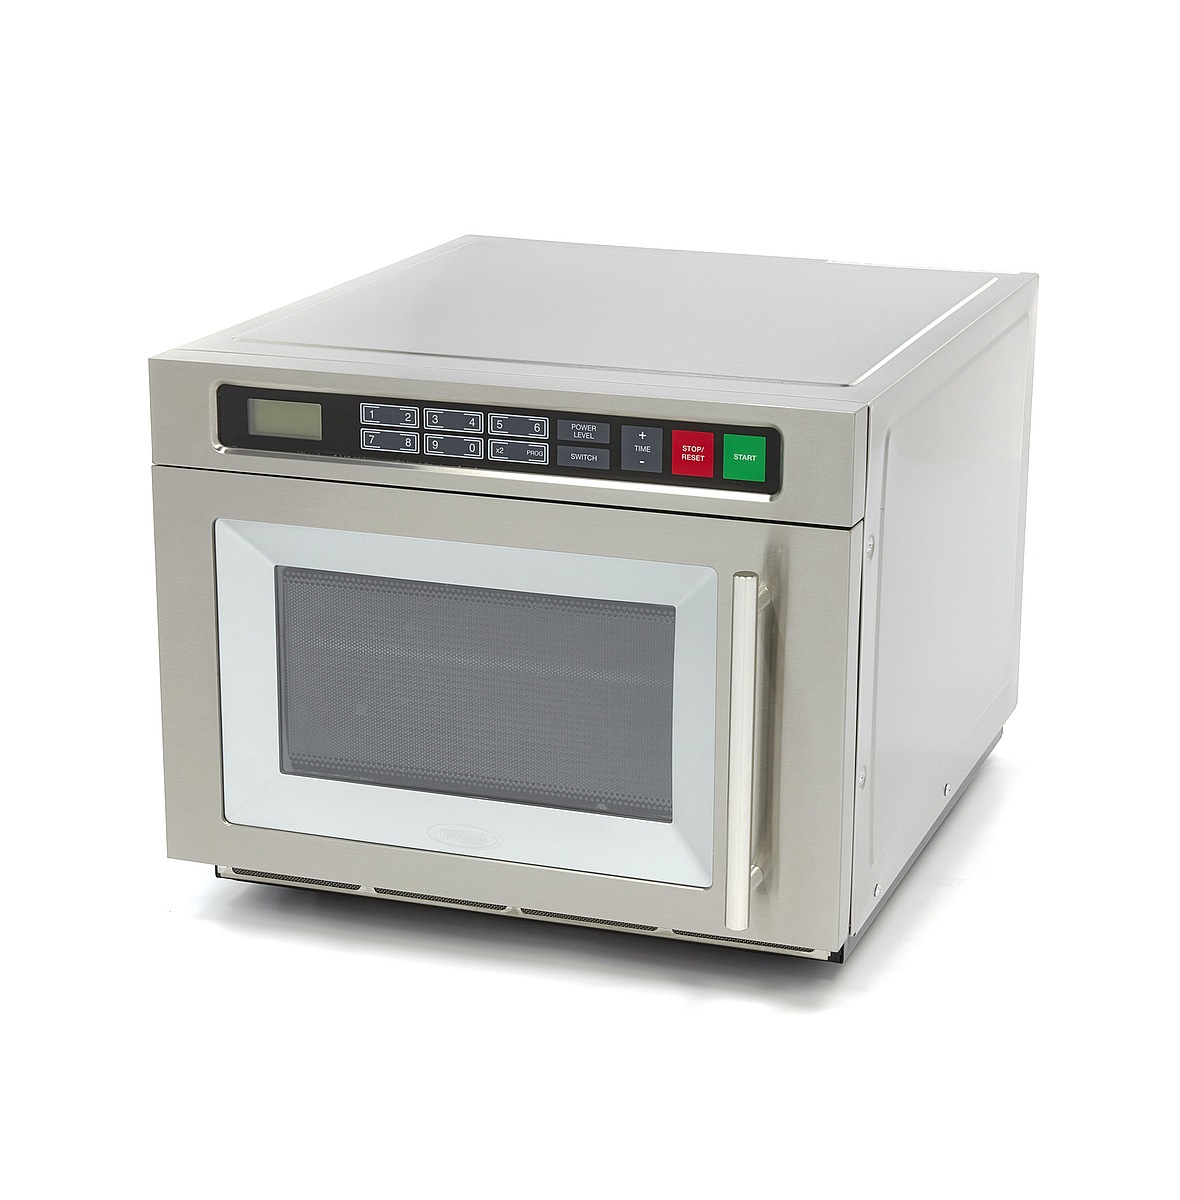 Is Machtigen ziekte 30 liter industrial microwave oven with digital control